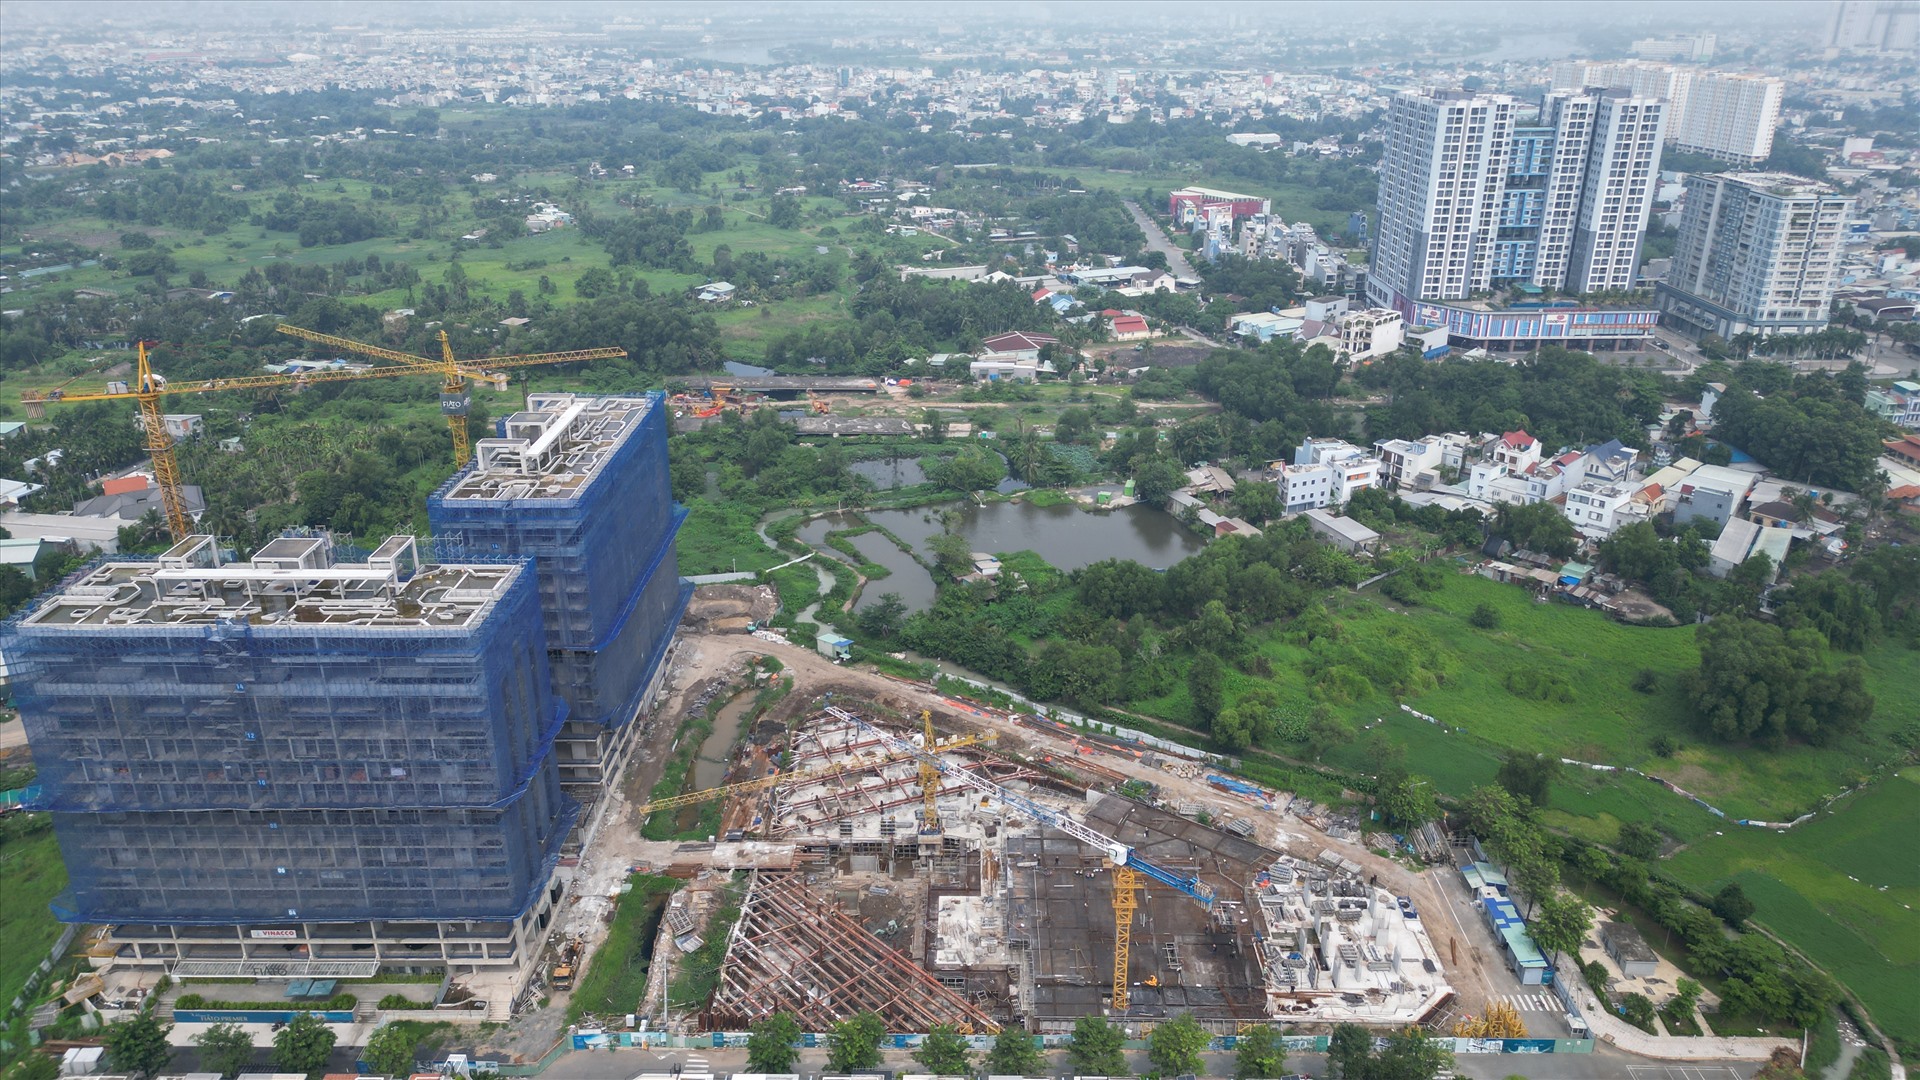 Theo ghi nhận của Lao Động, nhiều dự án bất động sản vẫn đang đua nhau xây dựng hai bên tuyến đường Vành đai 2 đoạn qua nút giao Gò Dưa (TP Thủ Đức). Điển hình là dự án Fiato Premier với quy mô 9,2 ha, nằm cạnh tuyến đường Vành đai 2 đang dang dở.